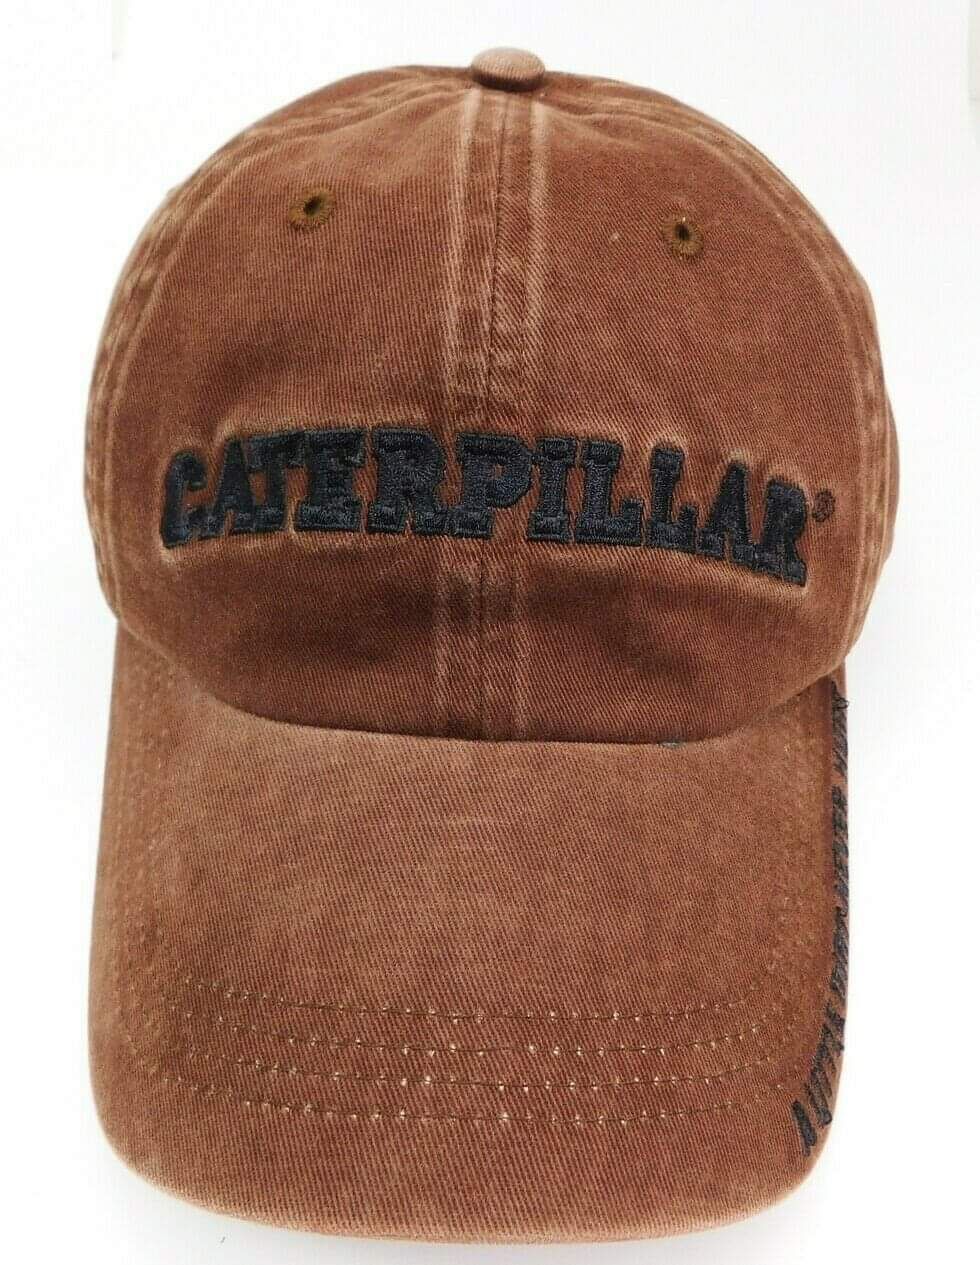 NEW CAT Caterpillar Embroidered Logo "A Little Dirt Never Hurt" Baseball Cap Hat